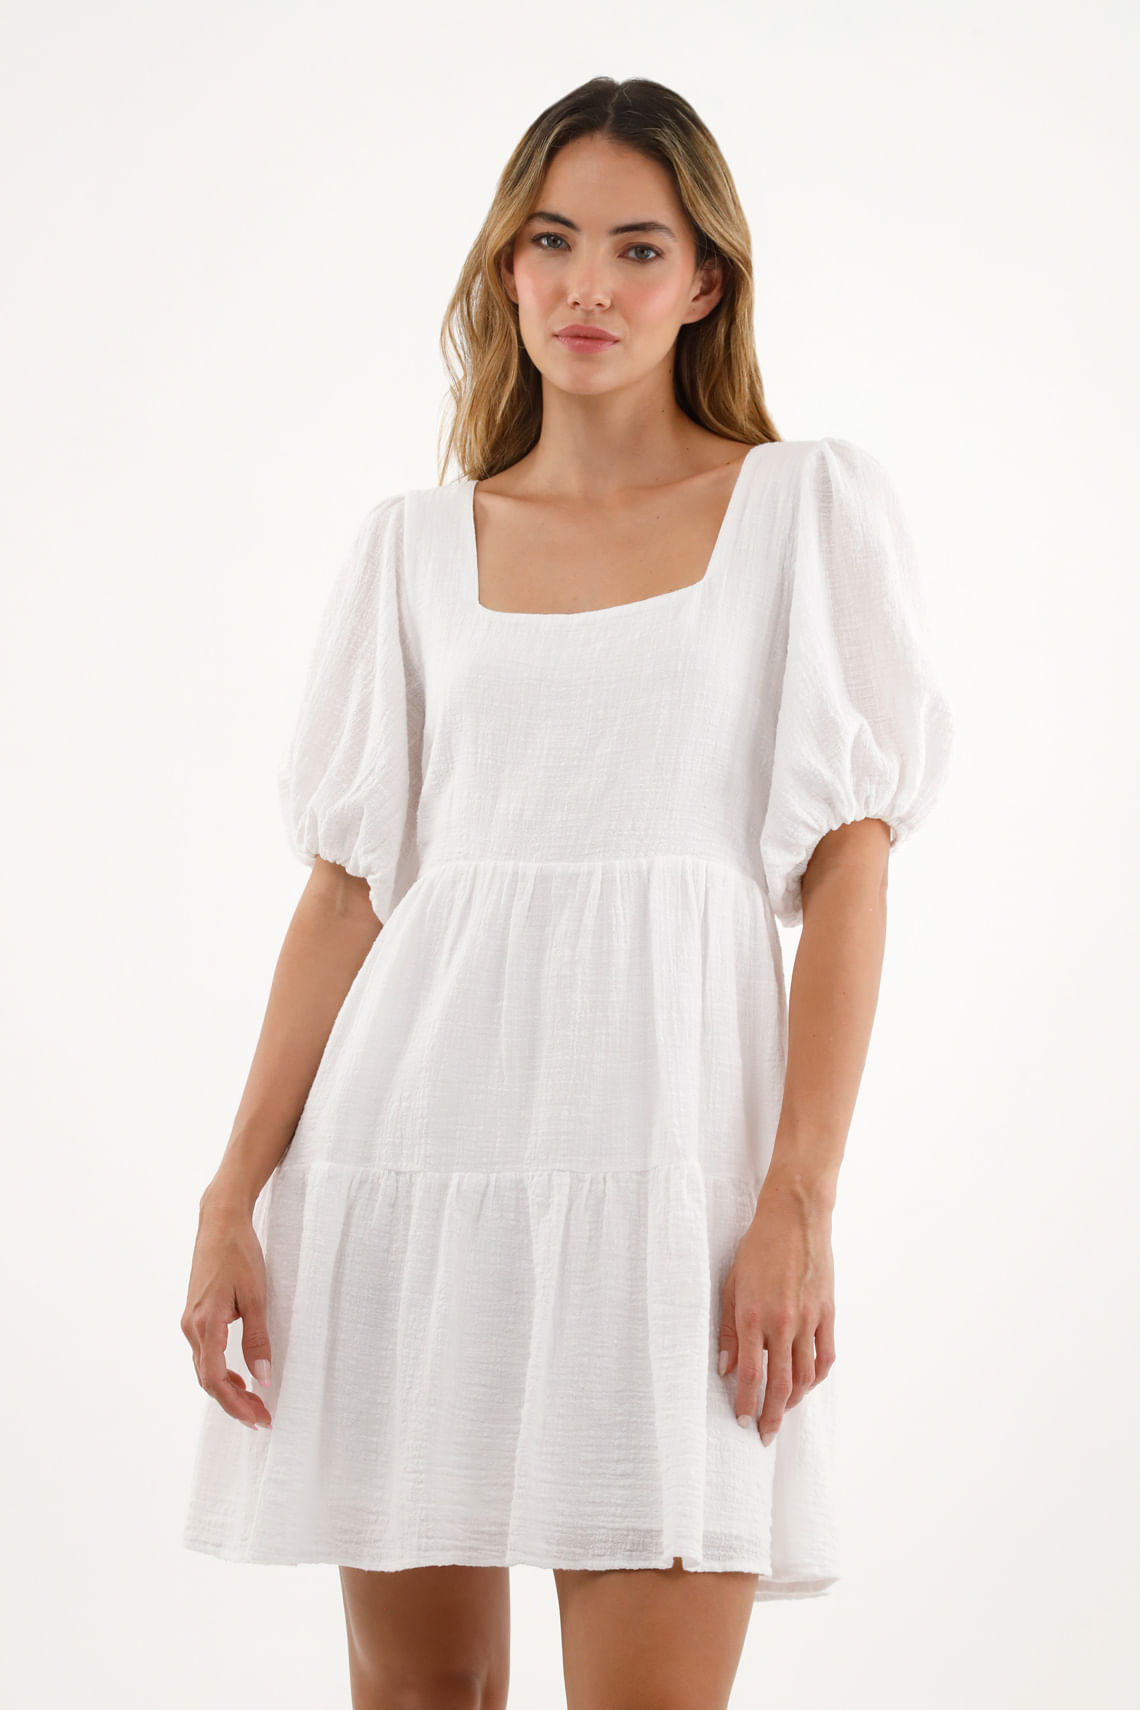 15 Lindos vestidos blancos que puedes usar en tu graduación